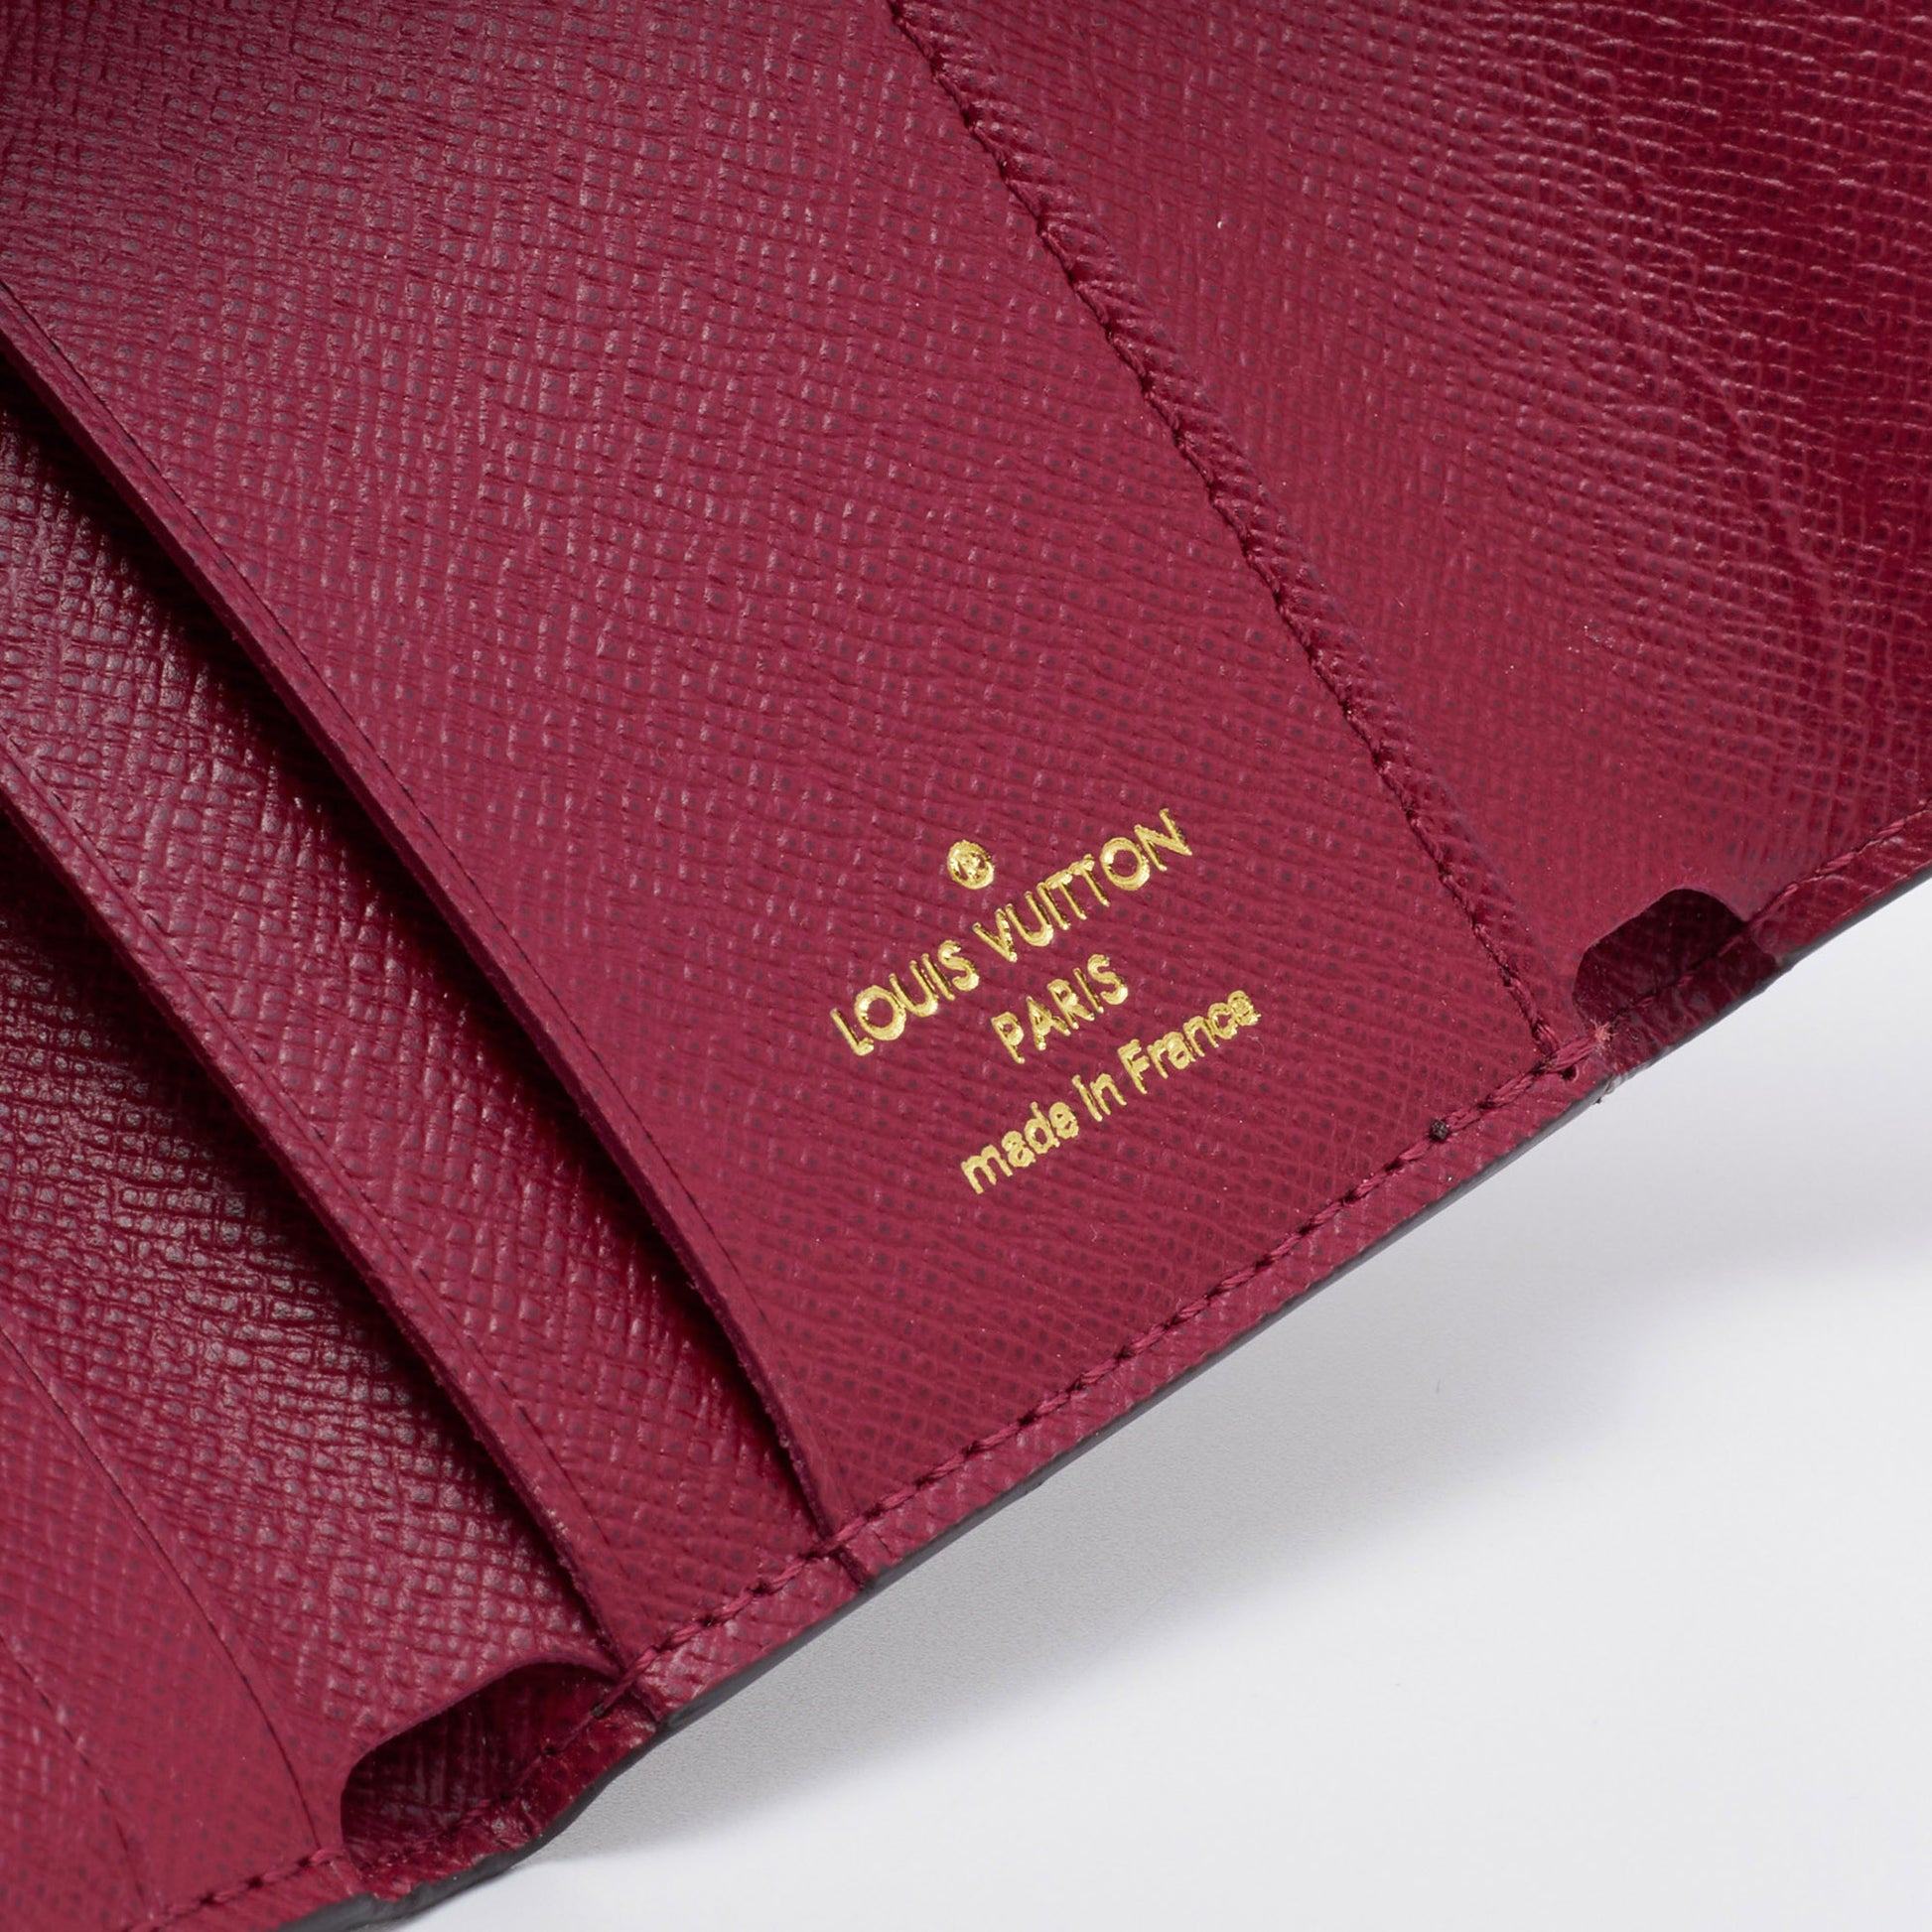 Louis Vuitton Zoe Wallet Fuchsia - LVLENKA Luxury Consignment